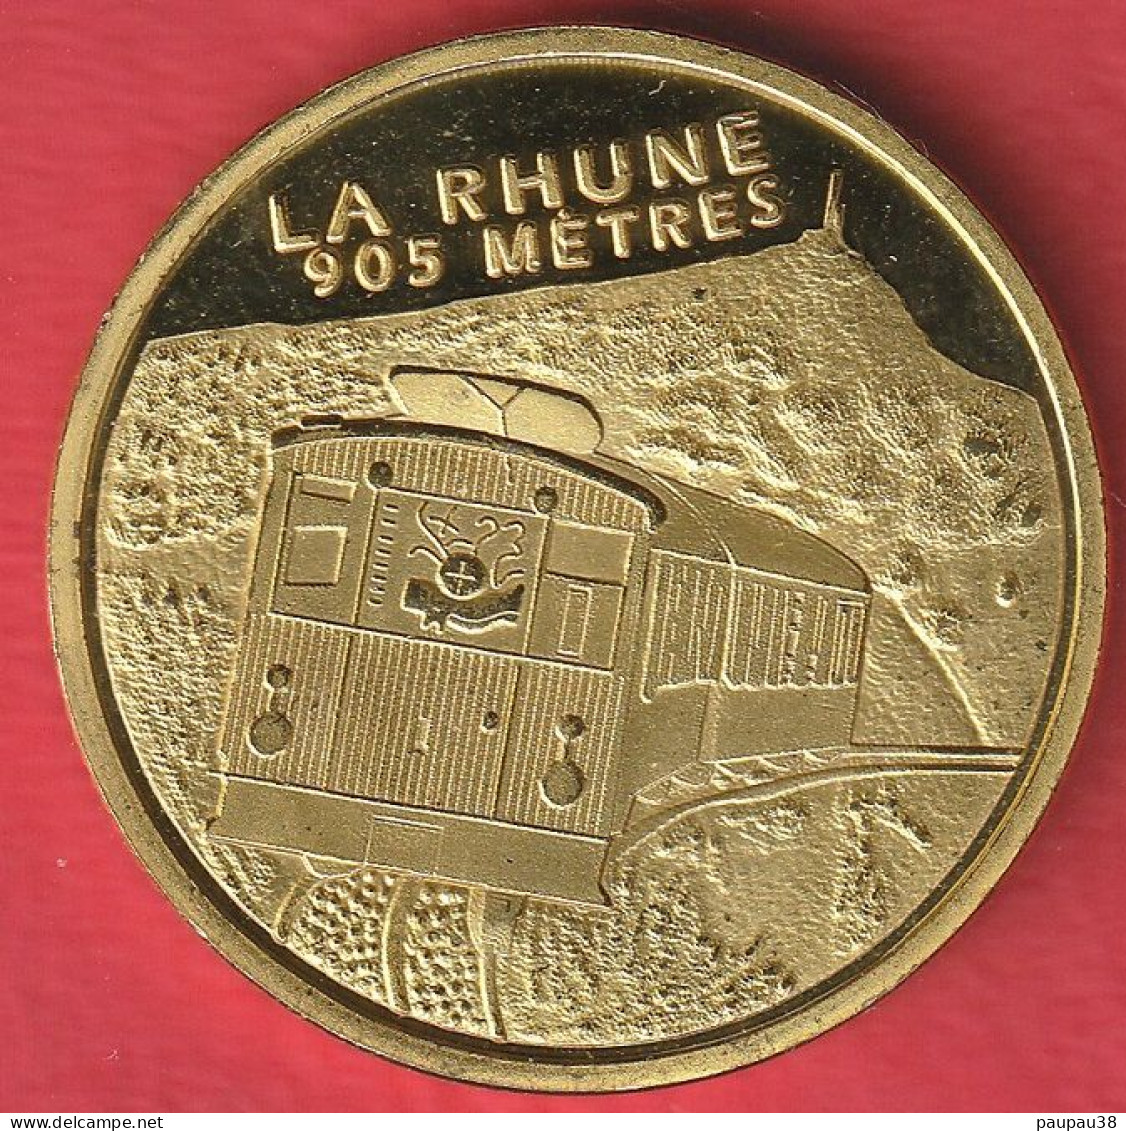 N° 1 SOUVENIR ET PATRIMOINE PAYS BASQUE - LE TRAIN DE LA RHUNE 905m - Non-datés